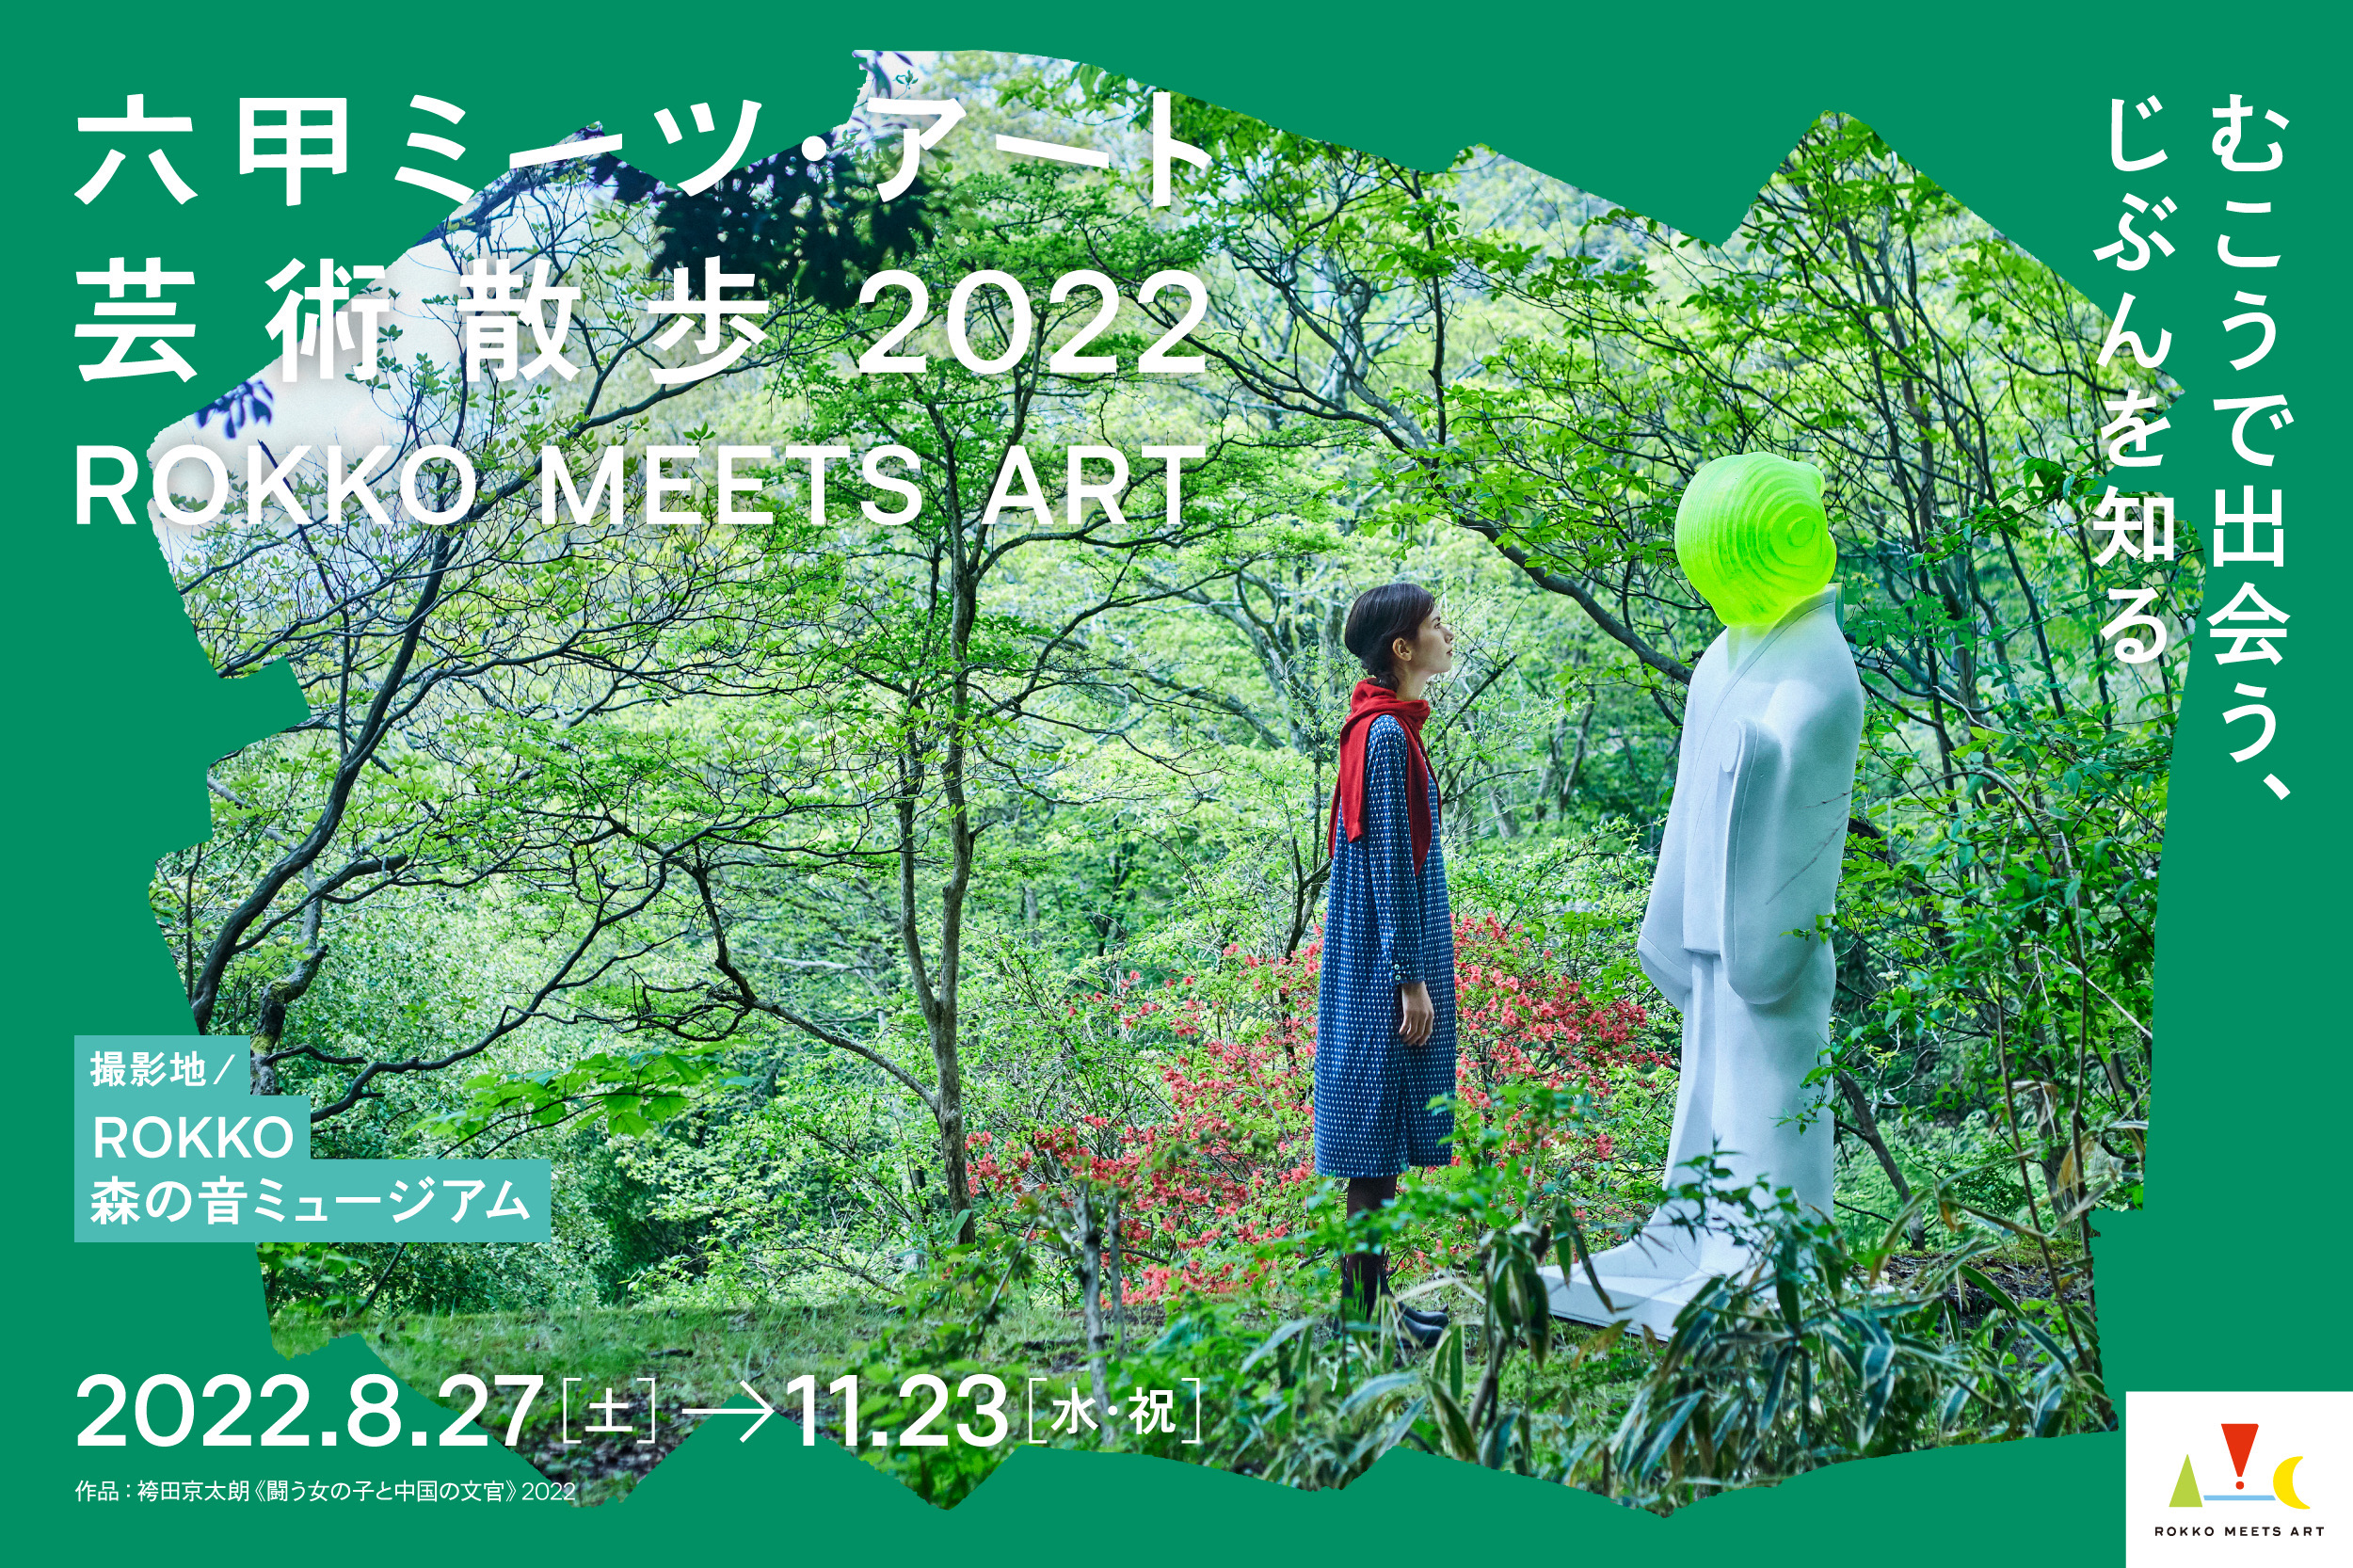 「六甲ミーツ・アート芸術散歩2022」にHana Yoshizawaが出展します